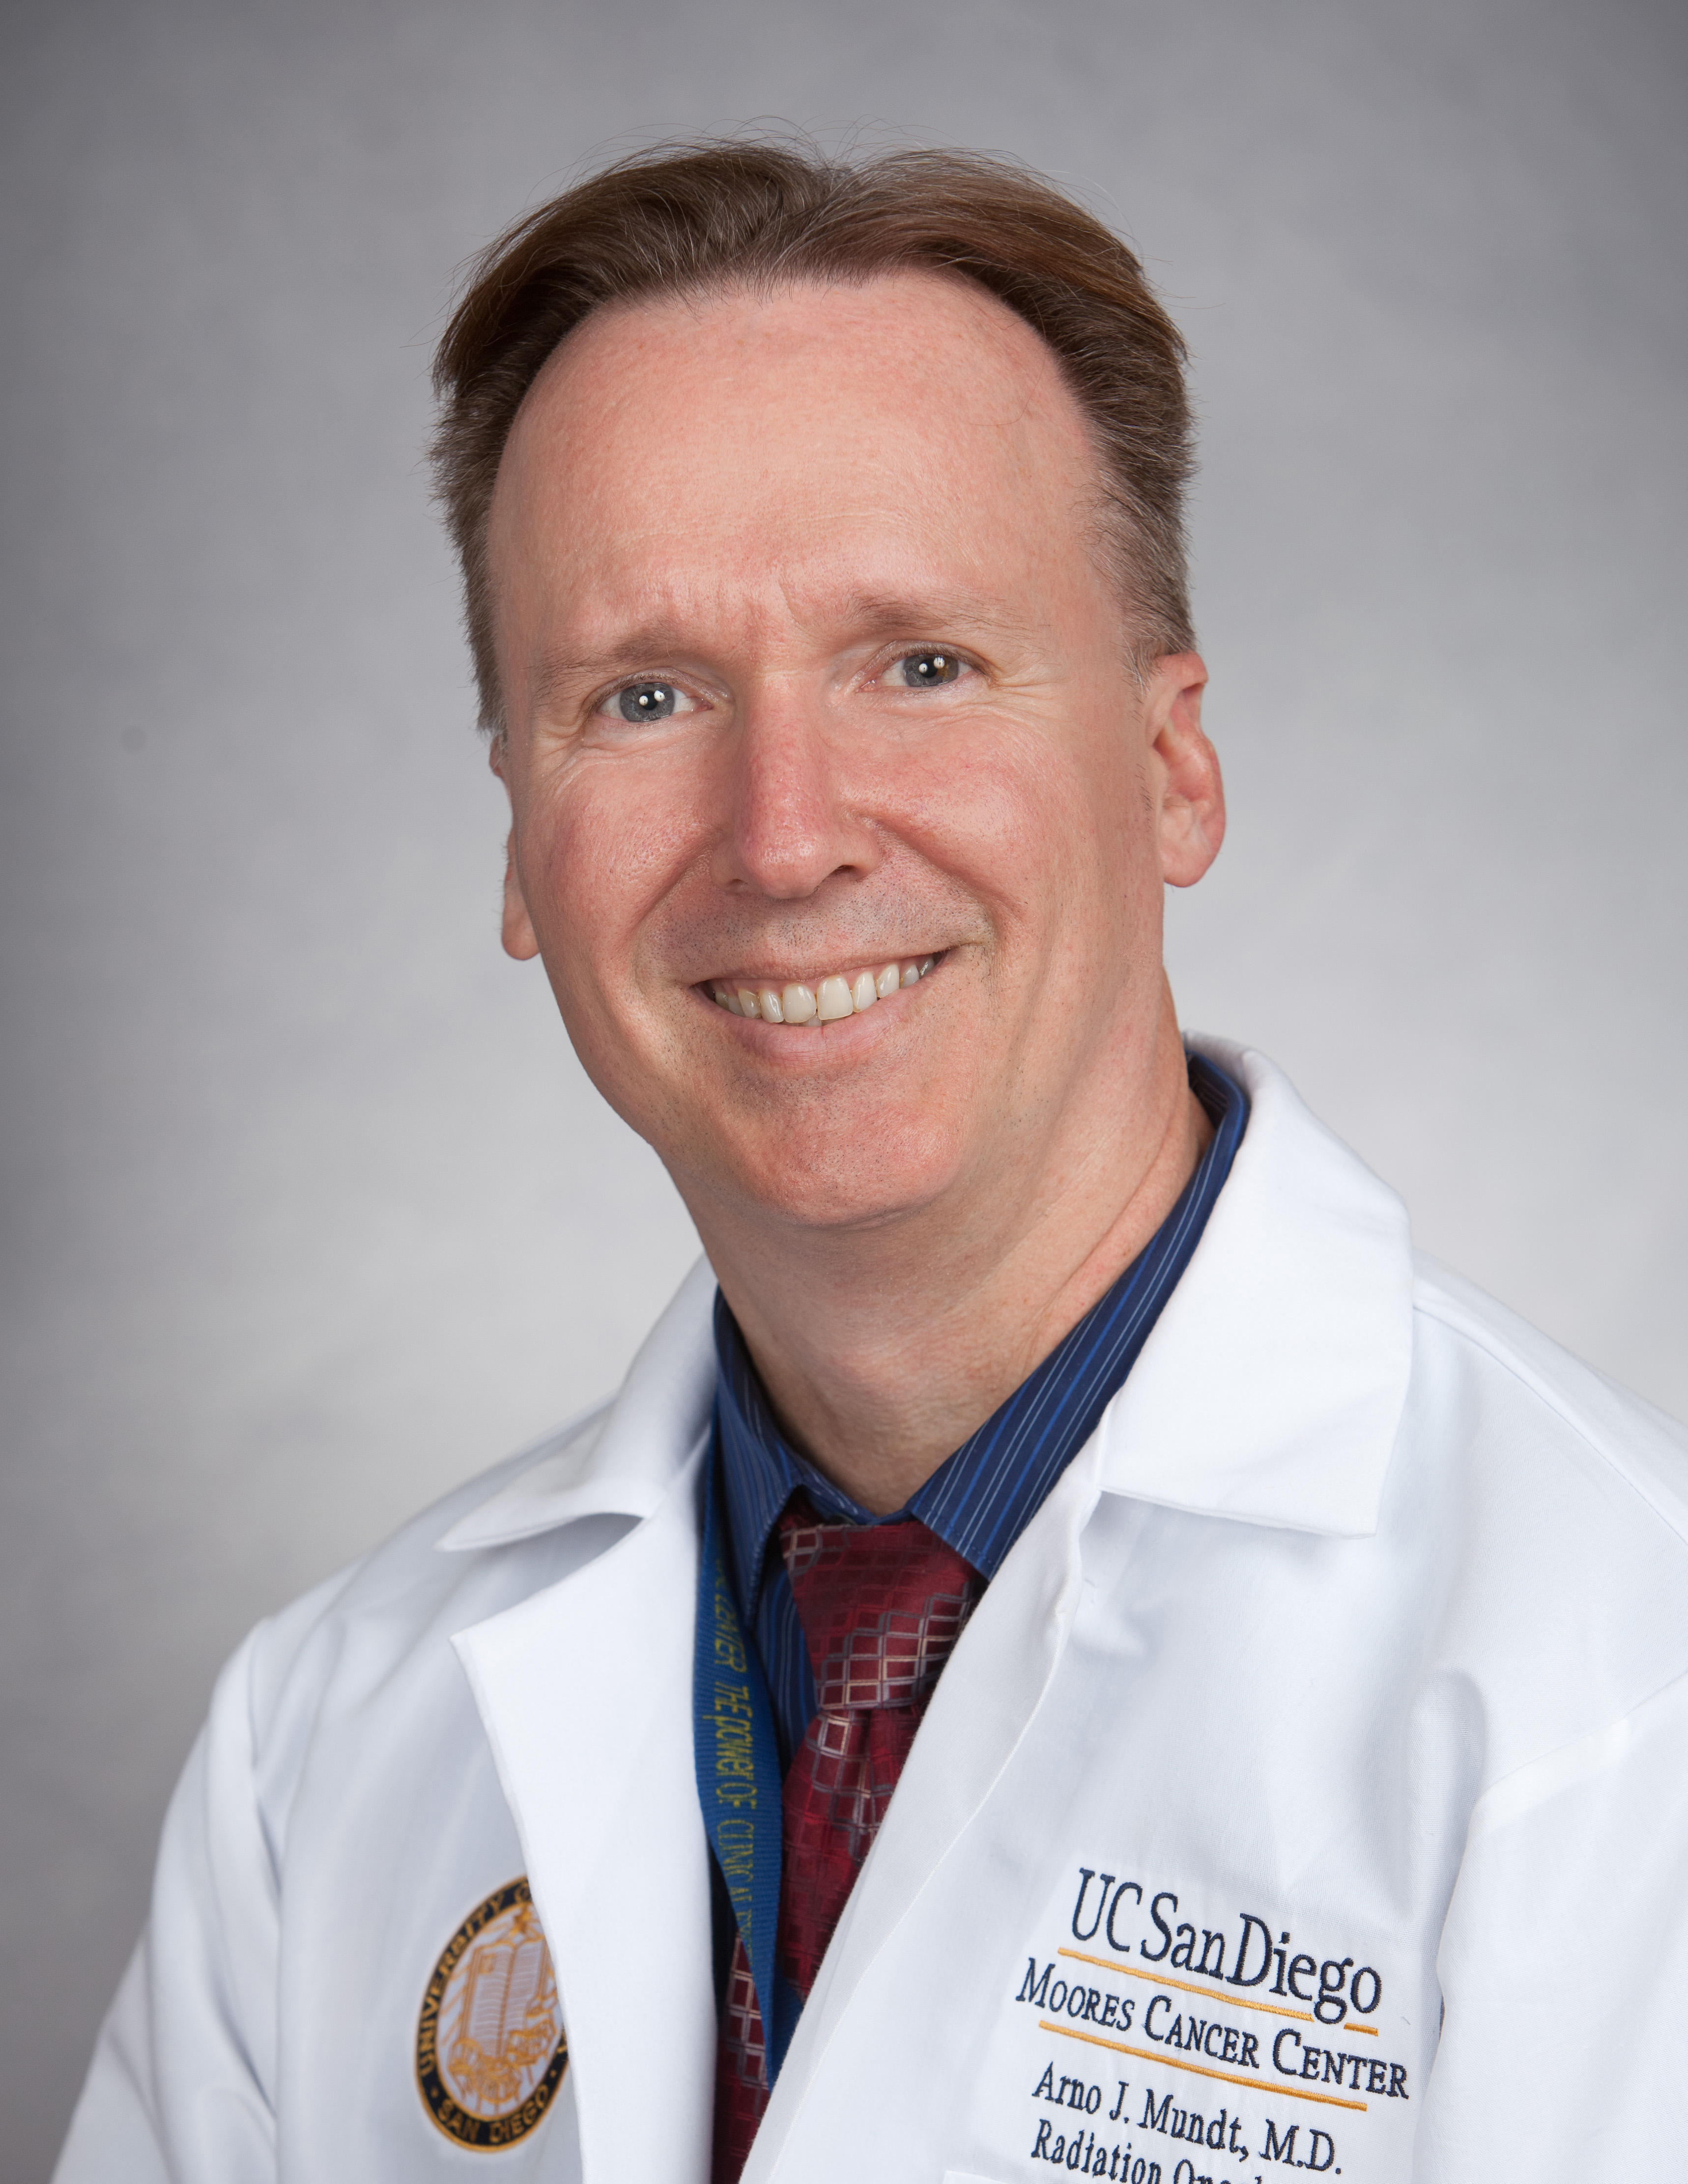 Dr. Arno J. Mundt, MD